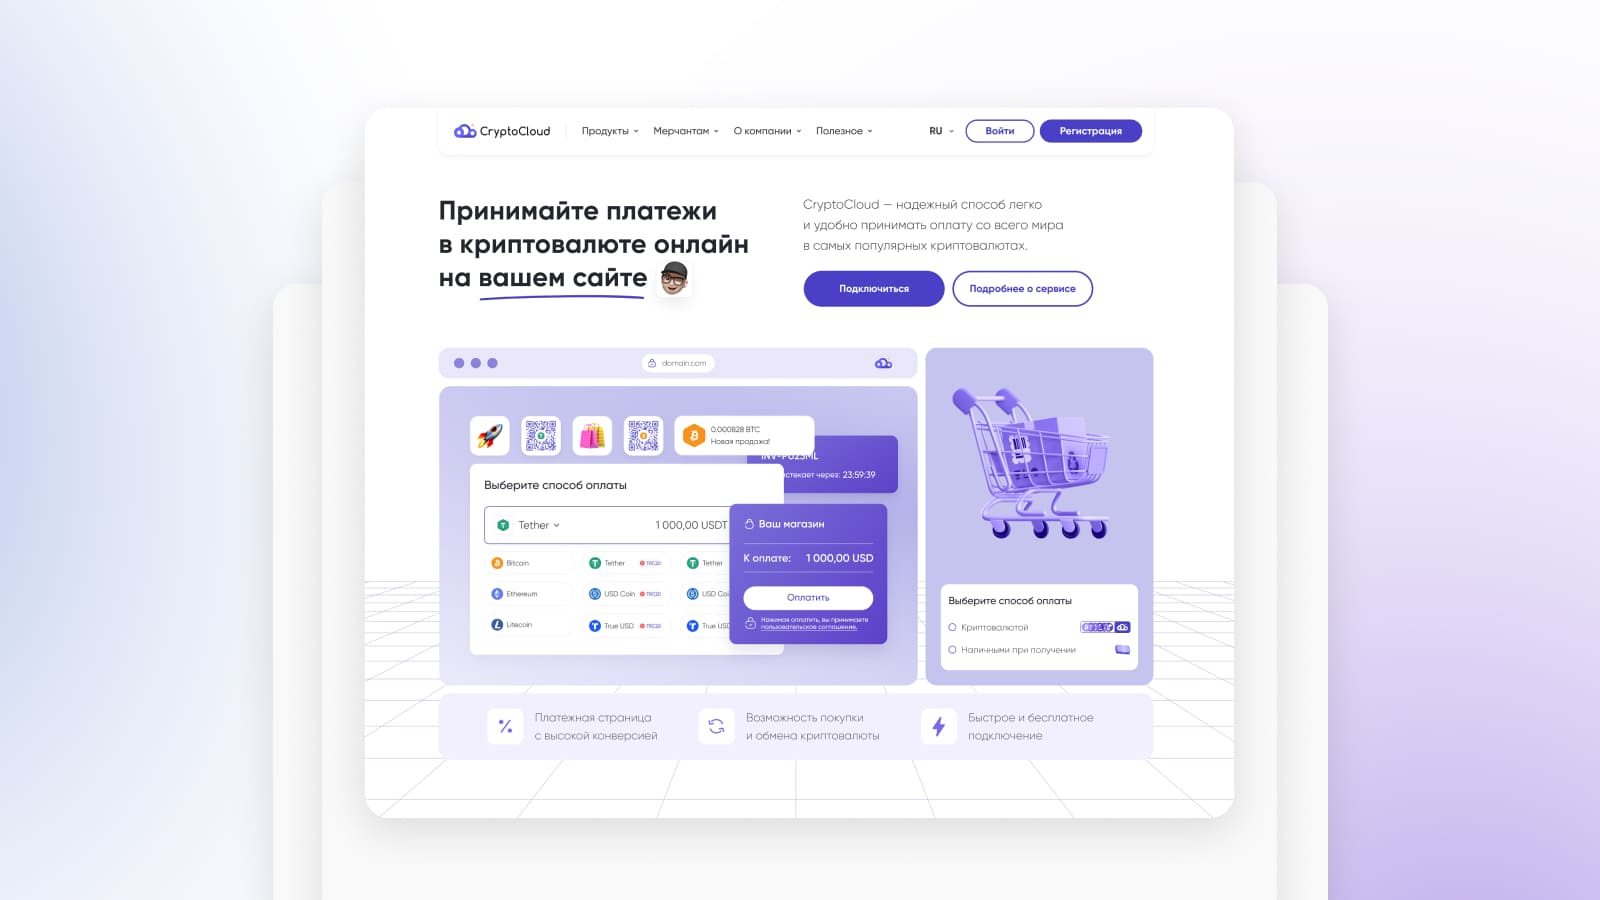 CryptoCloud — русскоязычный сервис для процессинга криптовалют.